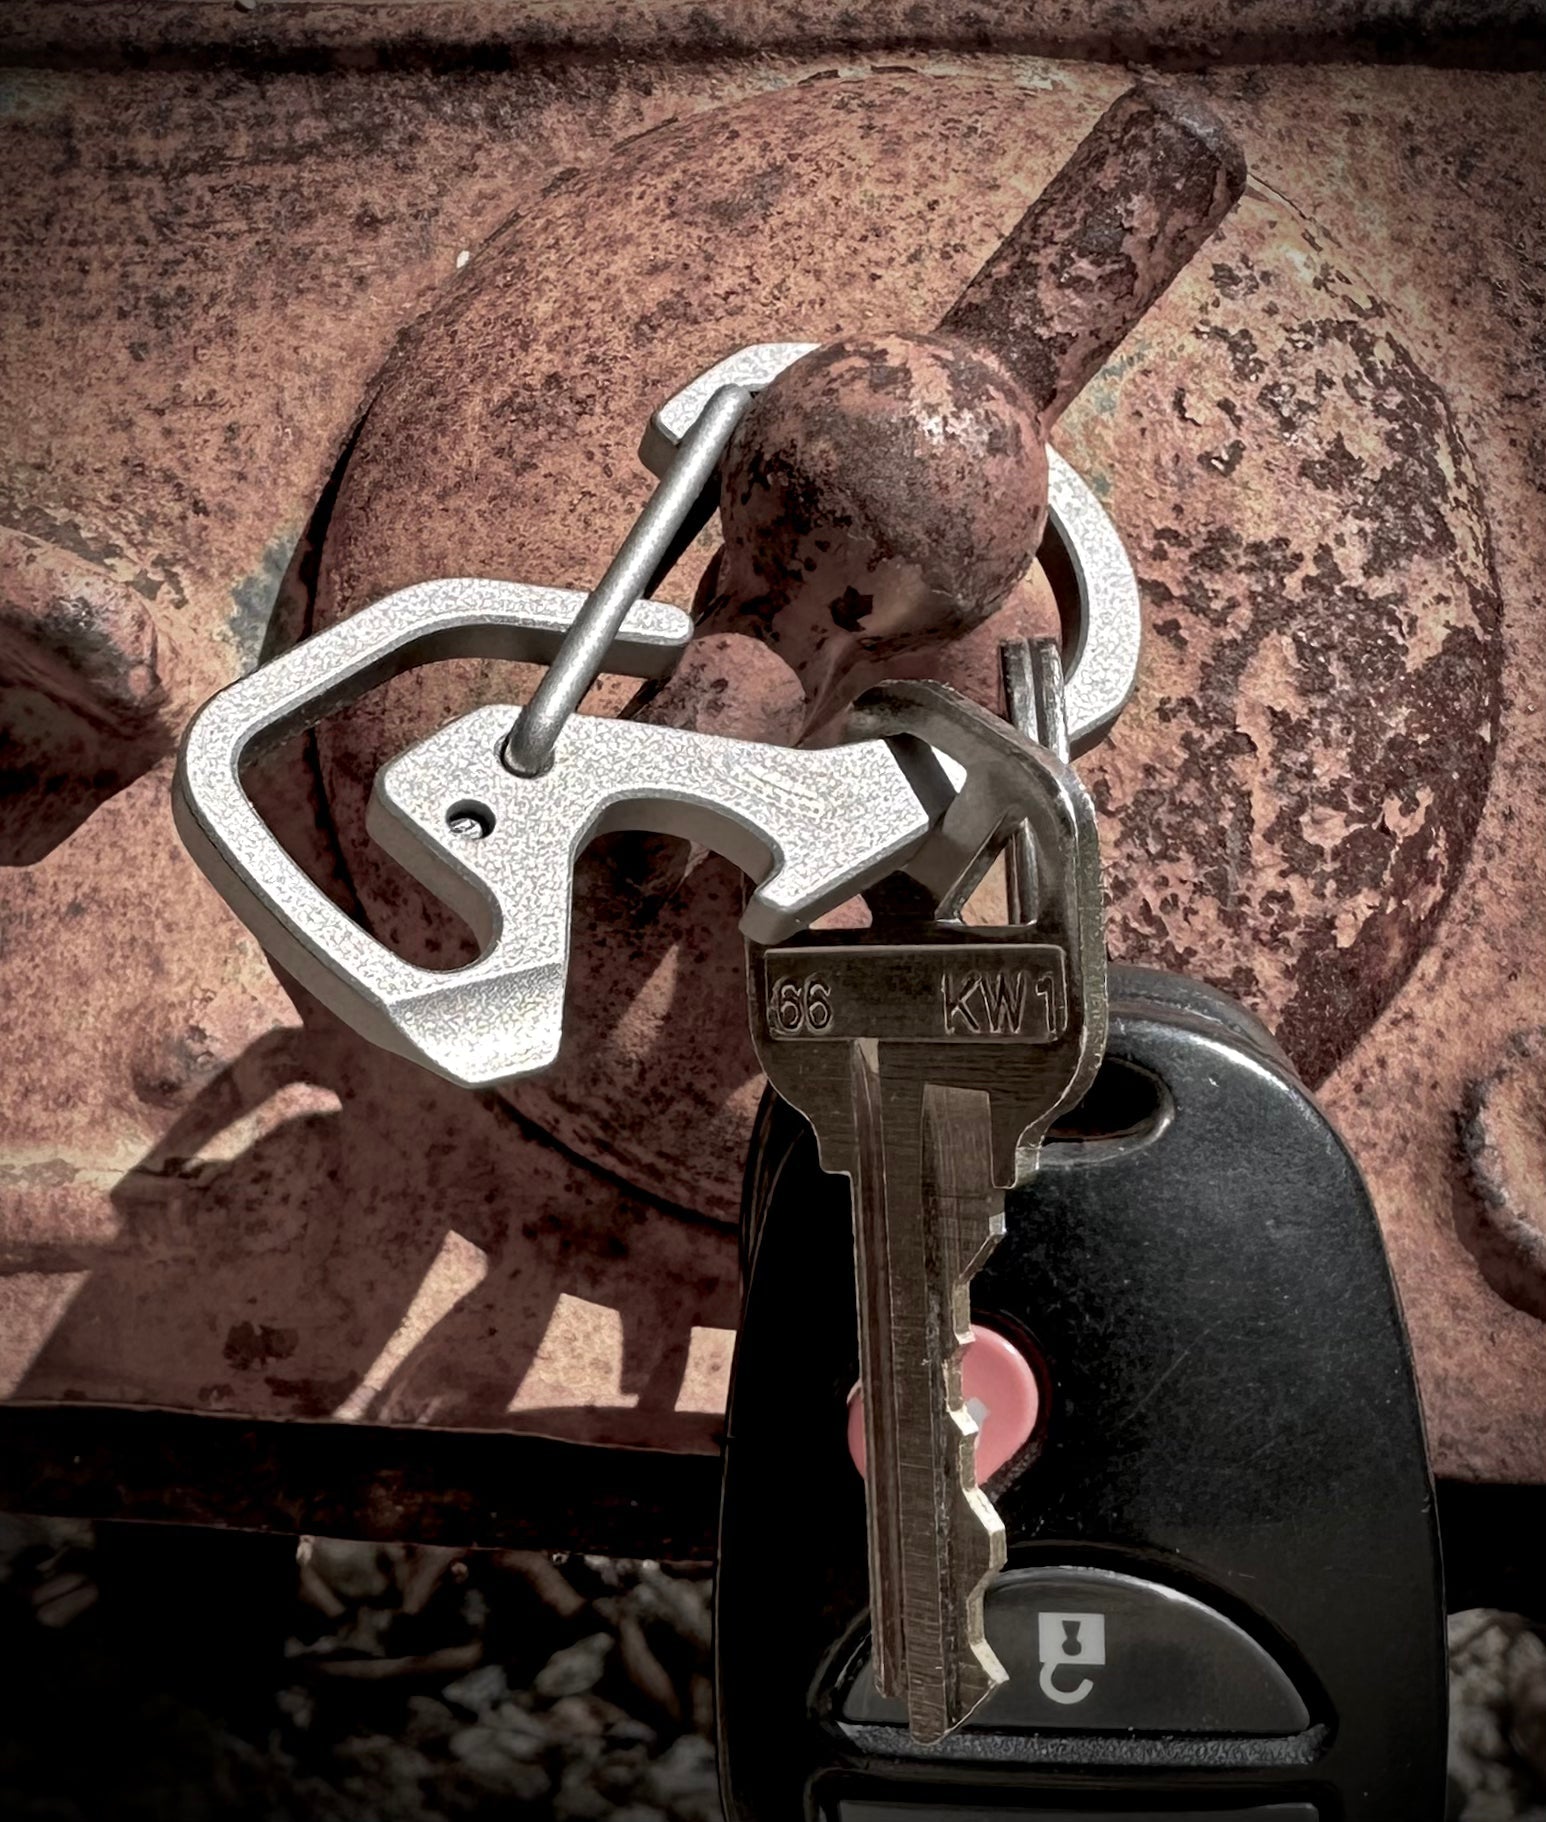 Pre-order the MSTR LINX Titanium Carabiner Key Ring Set — Tools